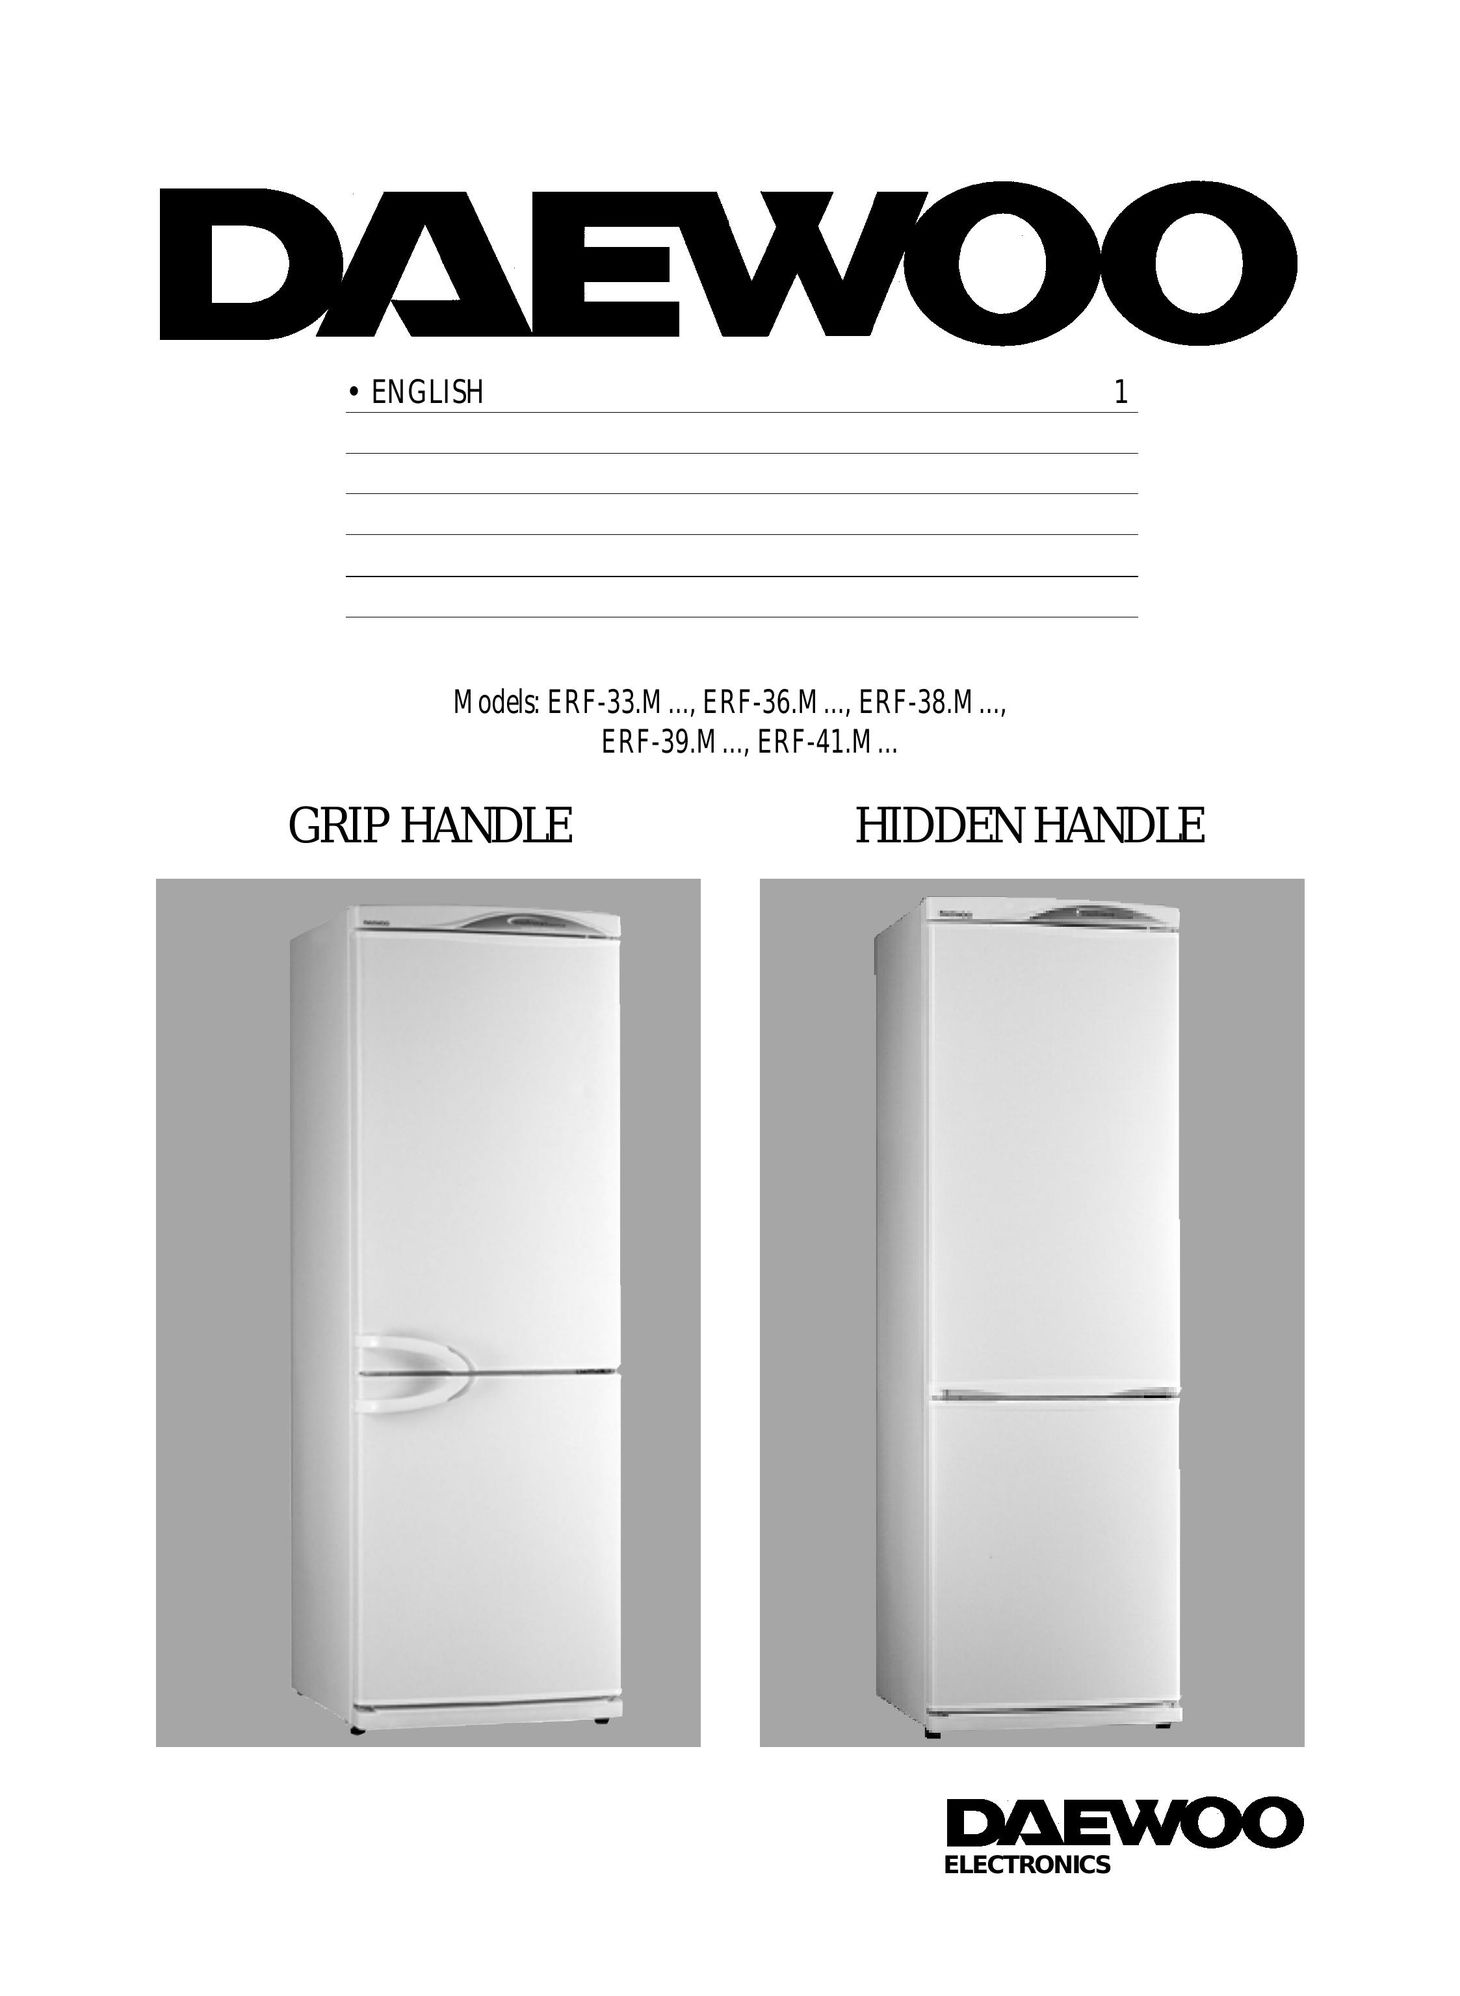 Daewoo ERF-36.M Freezer User Manual